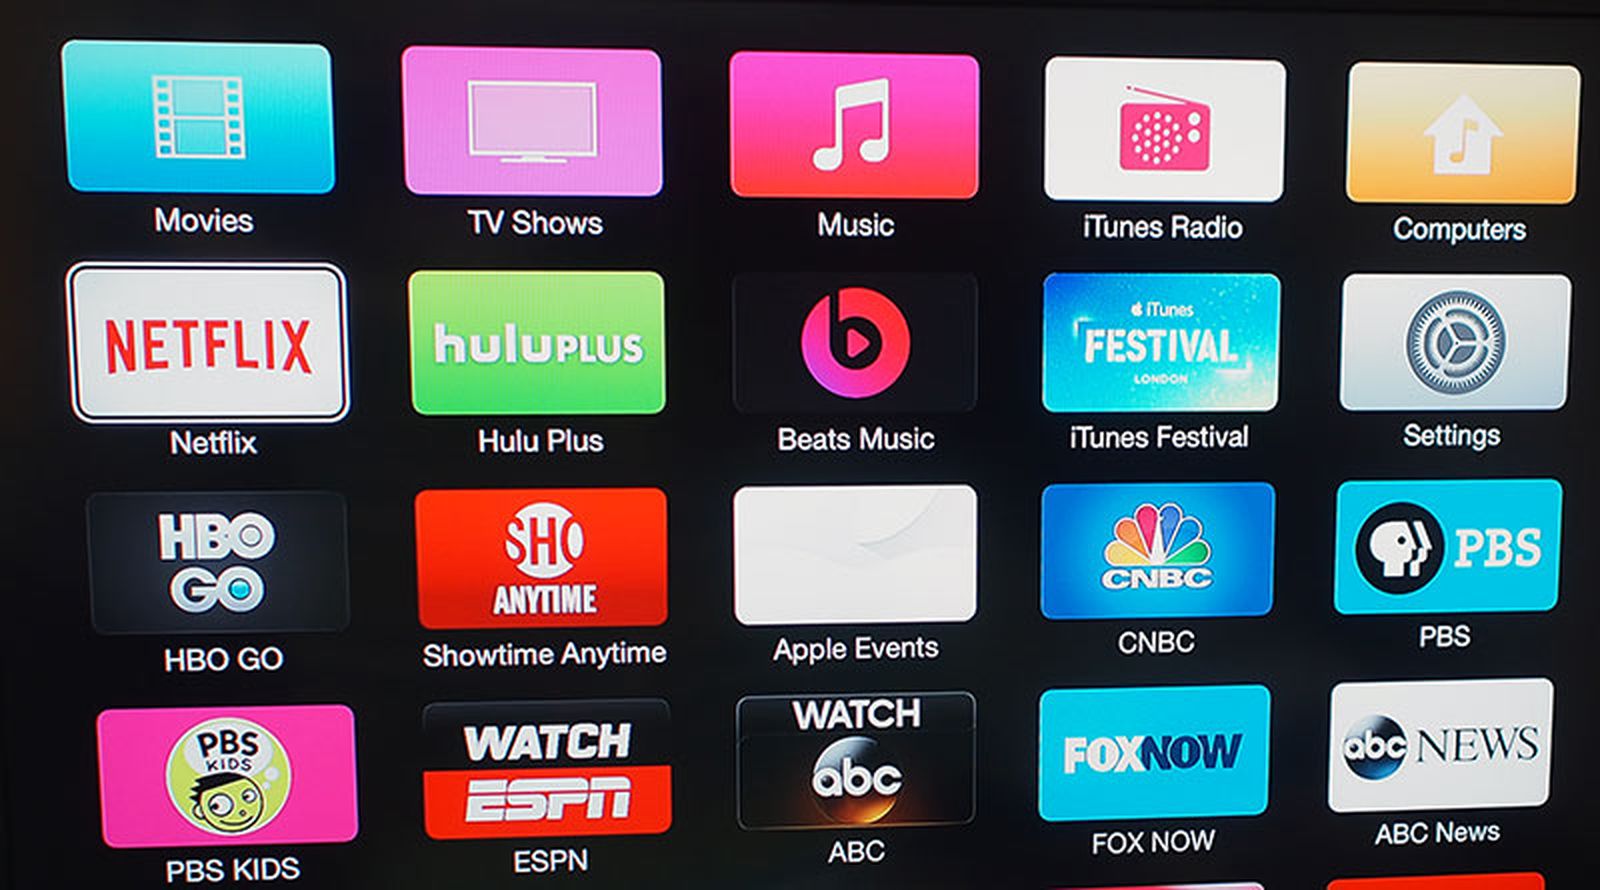 Apple TV Updates